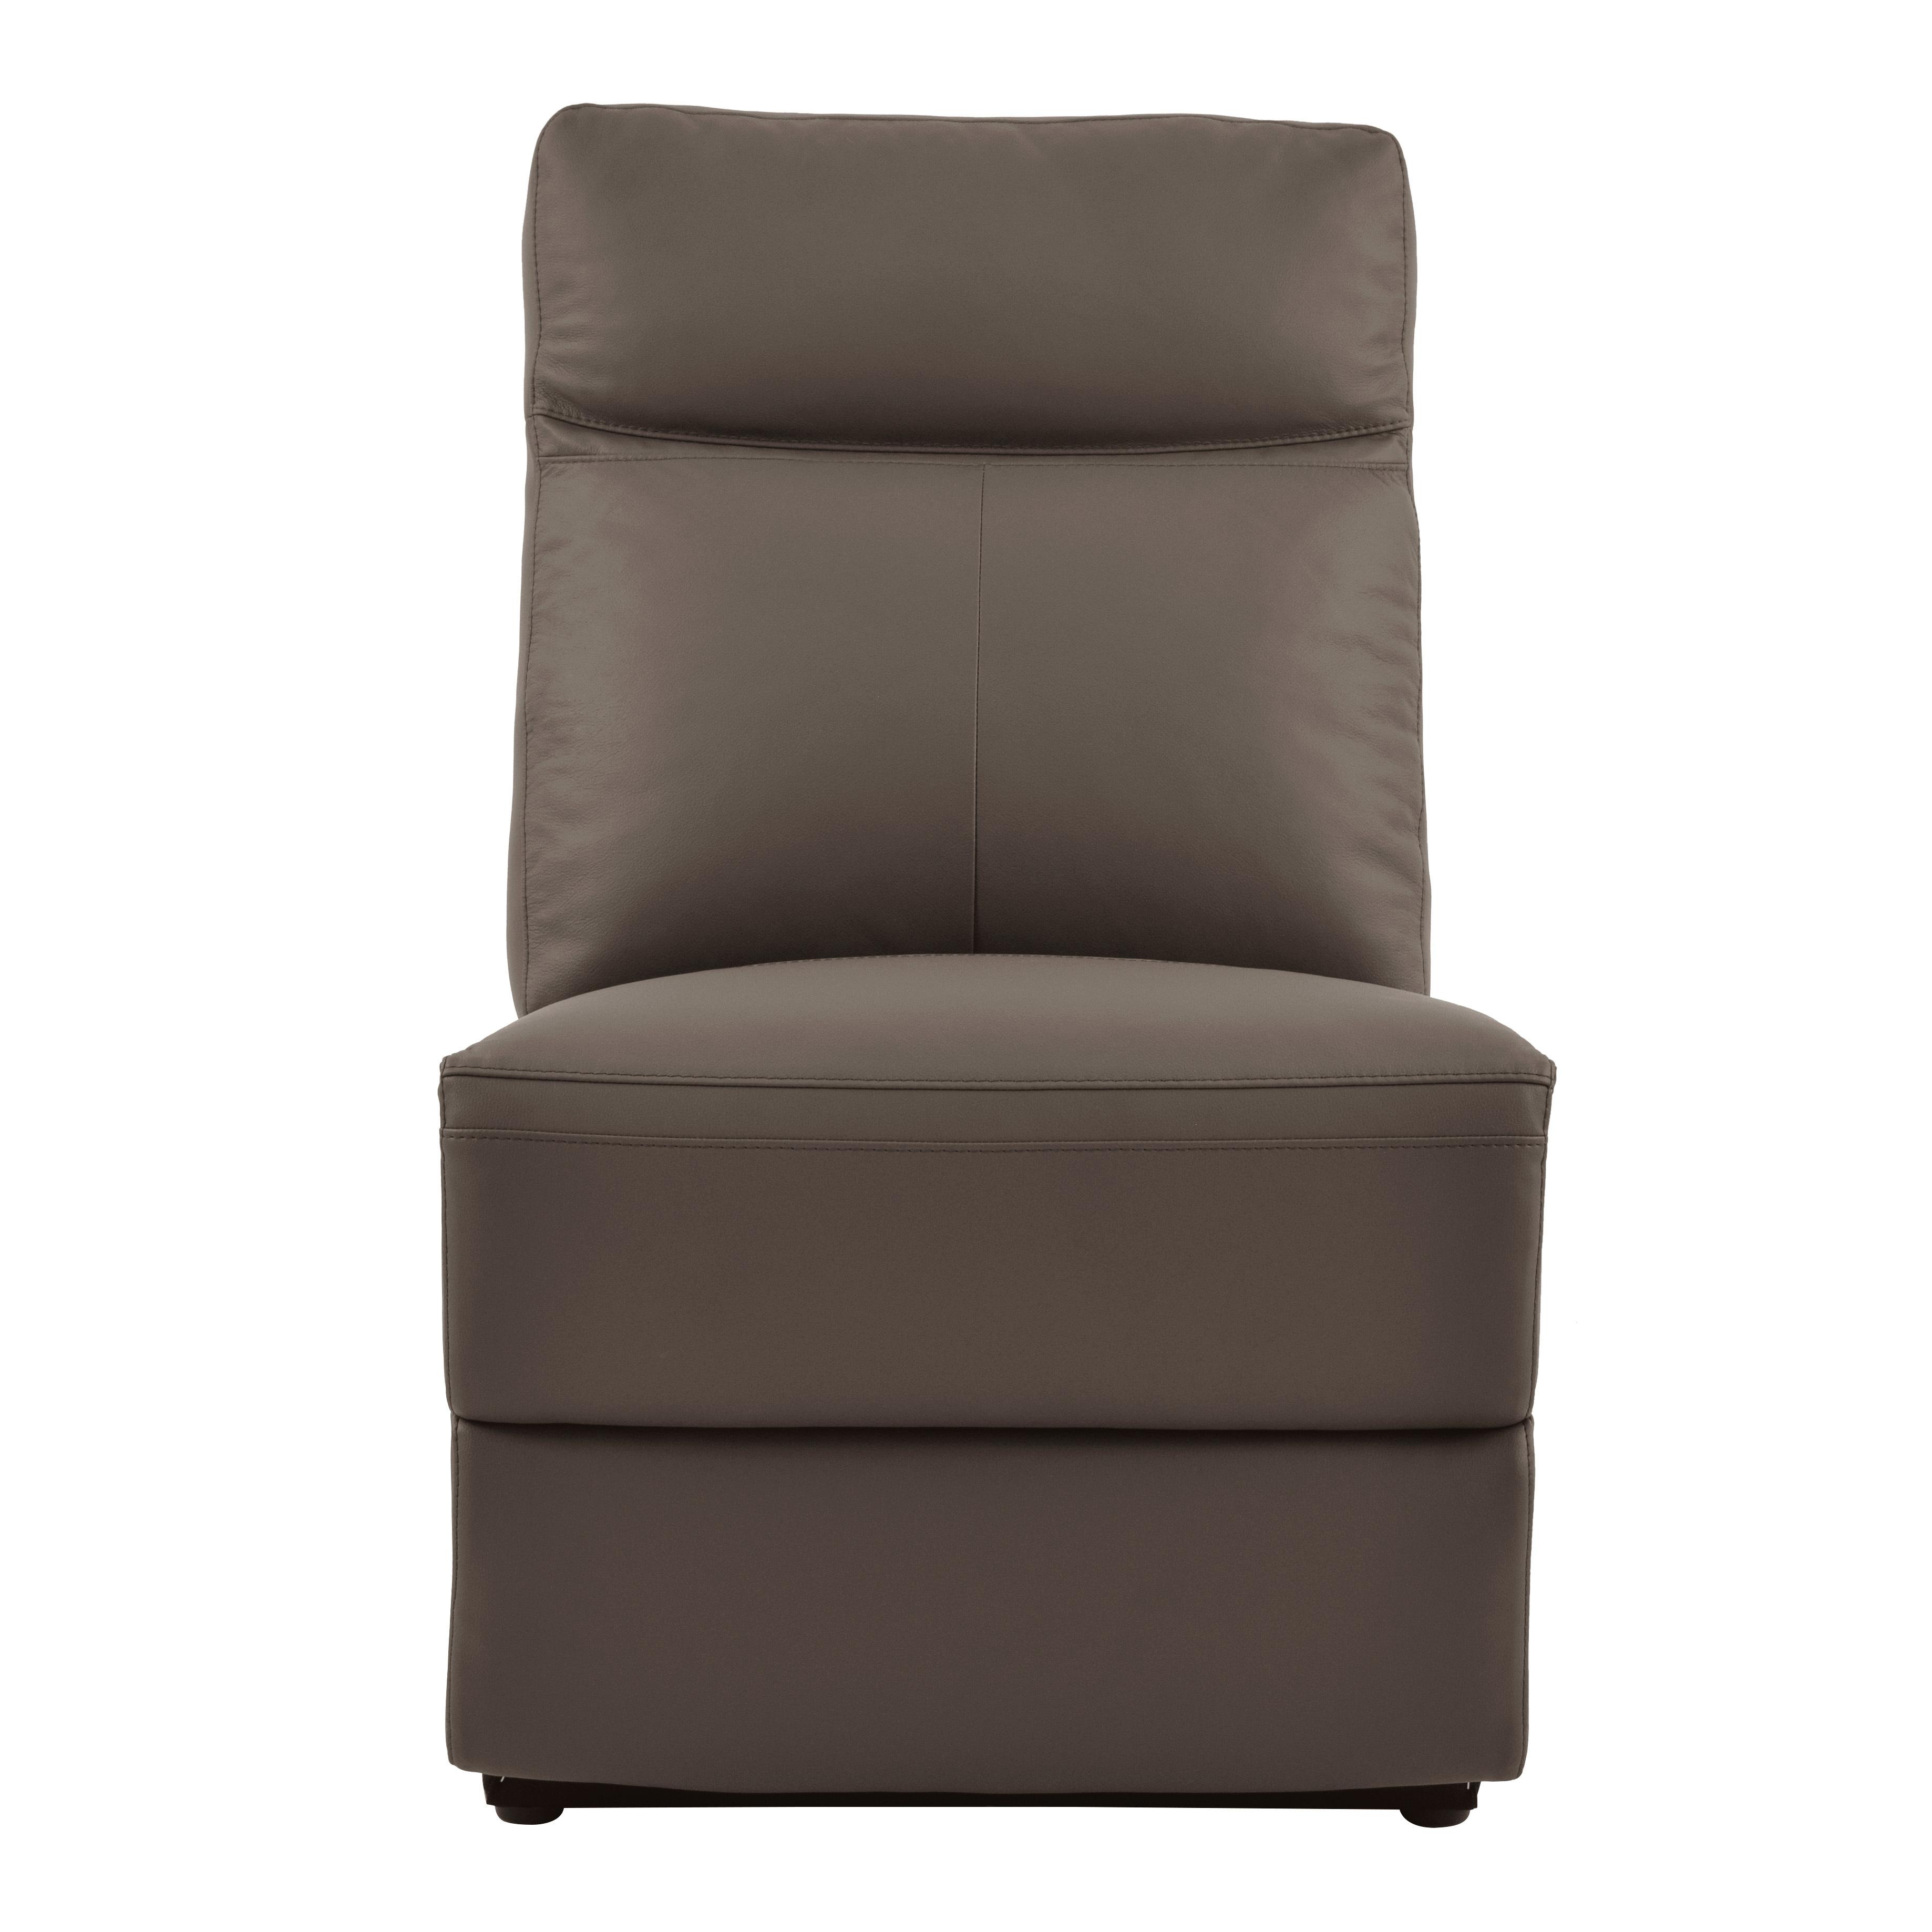 

    
Contemporary Raisin Leather Armless Chair Homelegance 8308-AC Olympia
